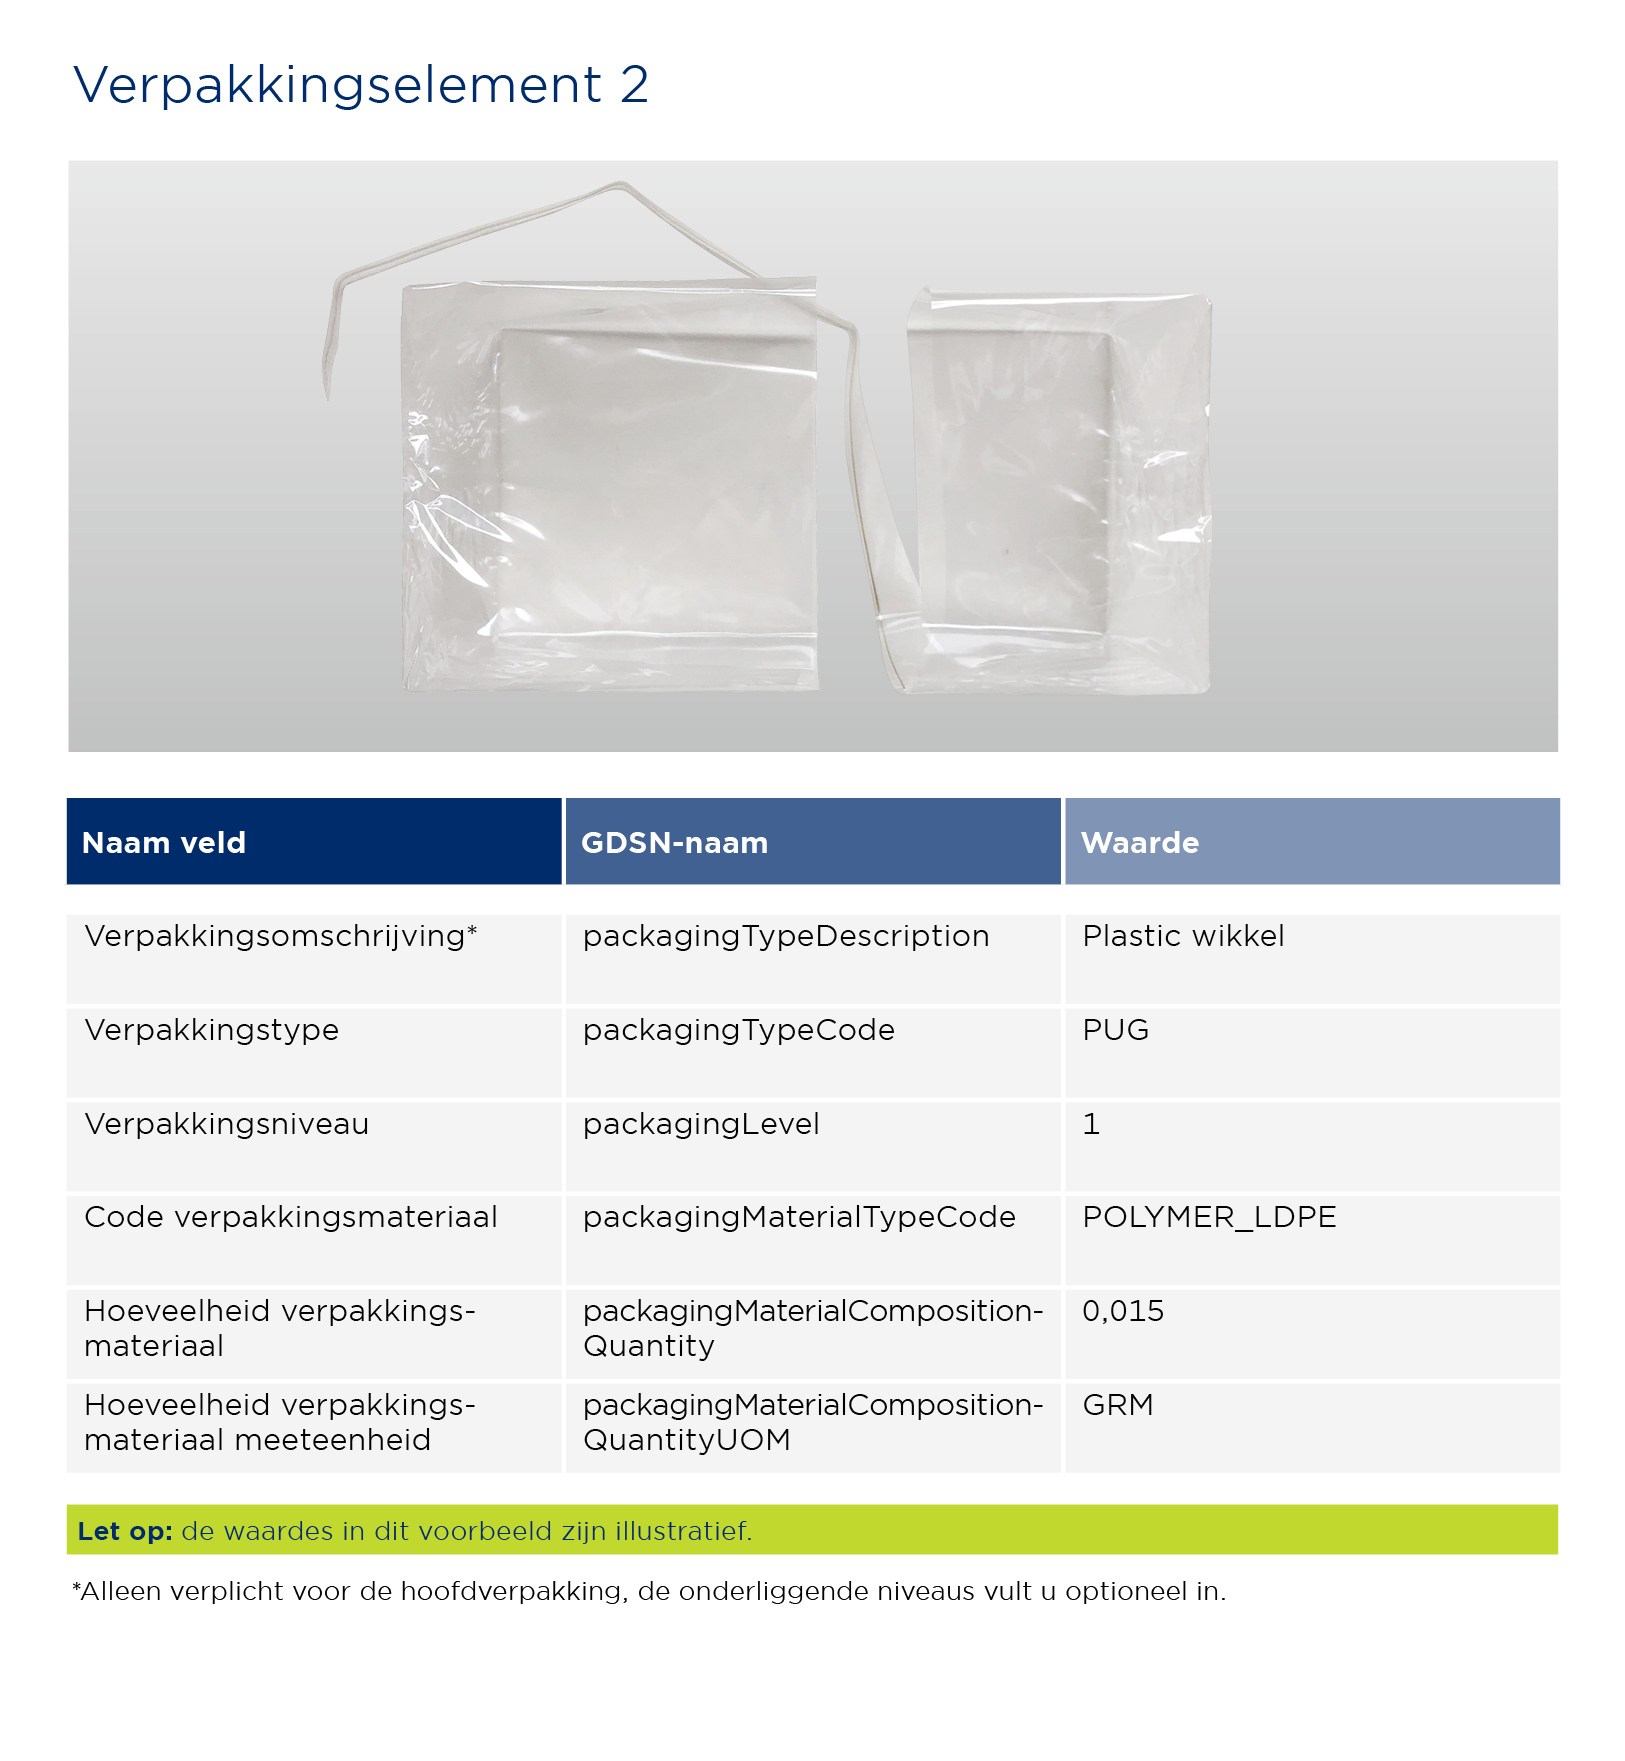 Verpakkingselement 2 - thee